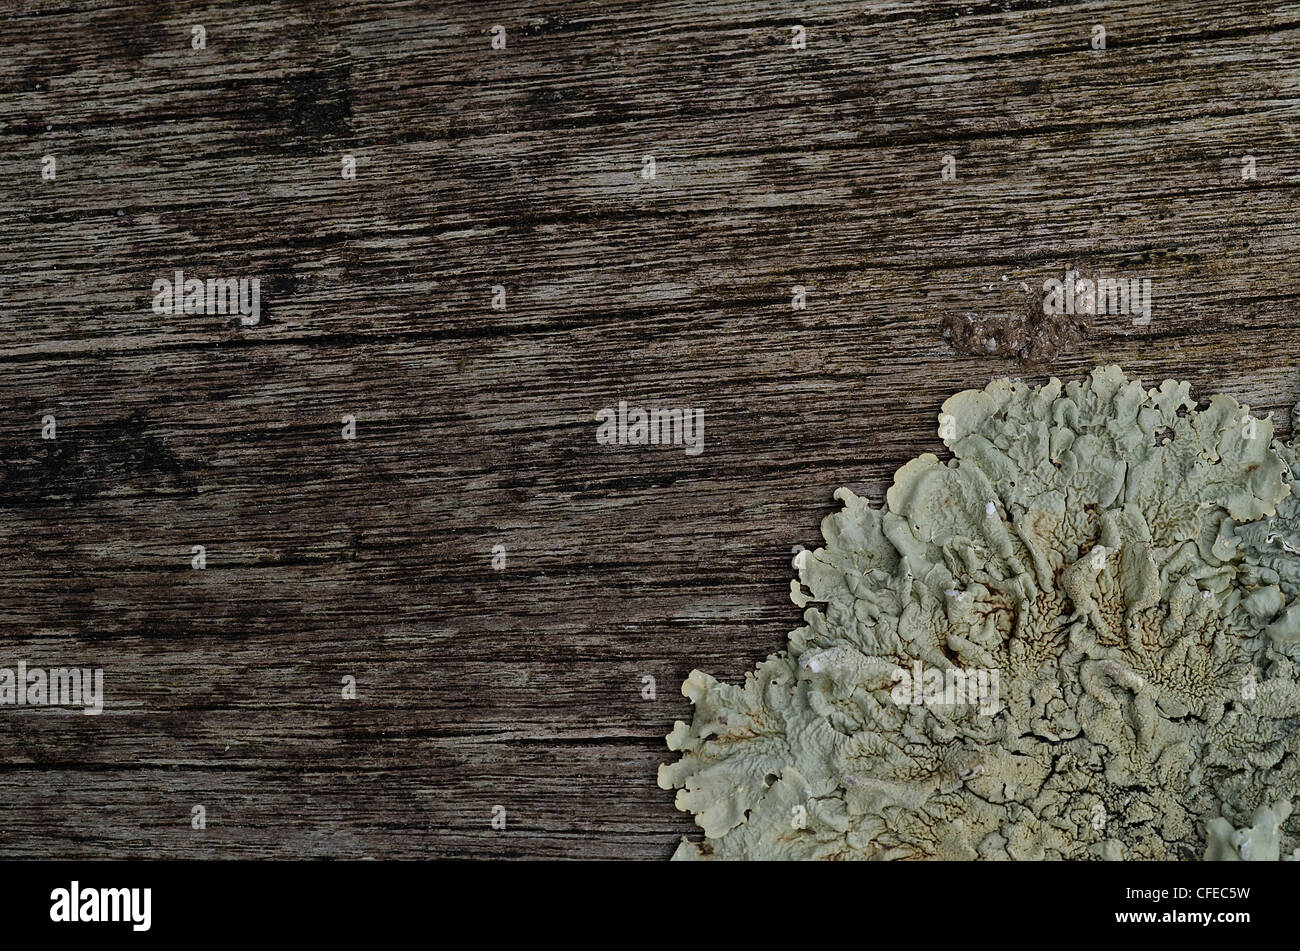 Schließen Detail verwittertes Holz mit blättrigen Flechten Thallus befestigt - eigentlich die Oberfläche einer hölzernen Picknick-Bank. Stockfoto